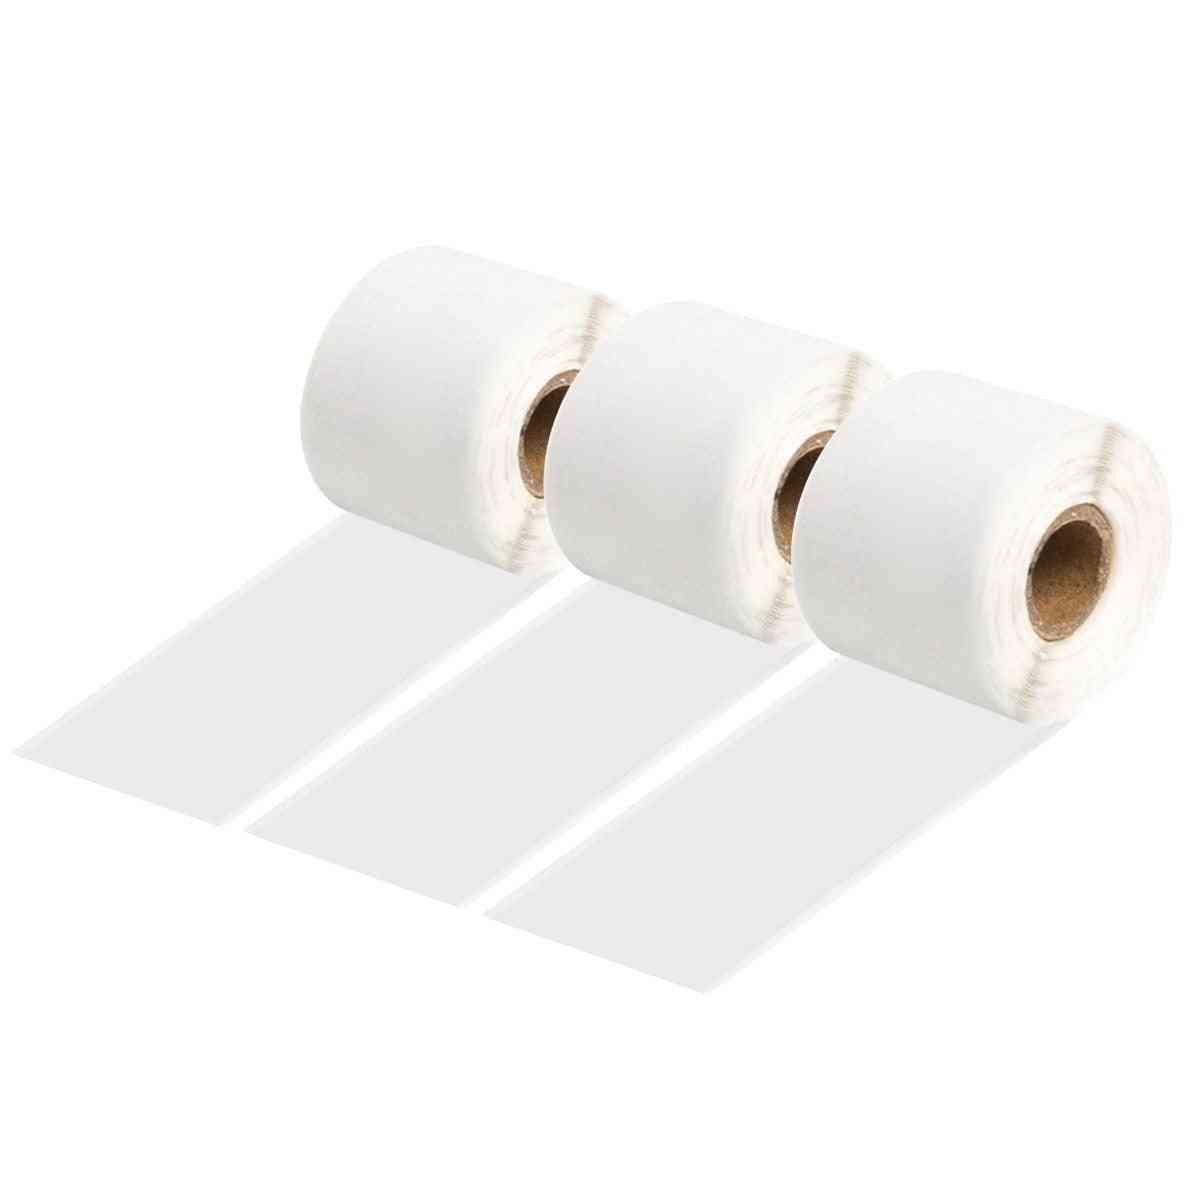 Self-adhesive Thermal Paper Rolls